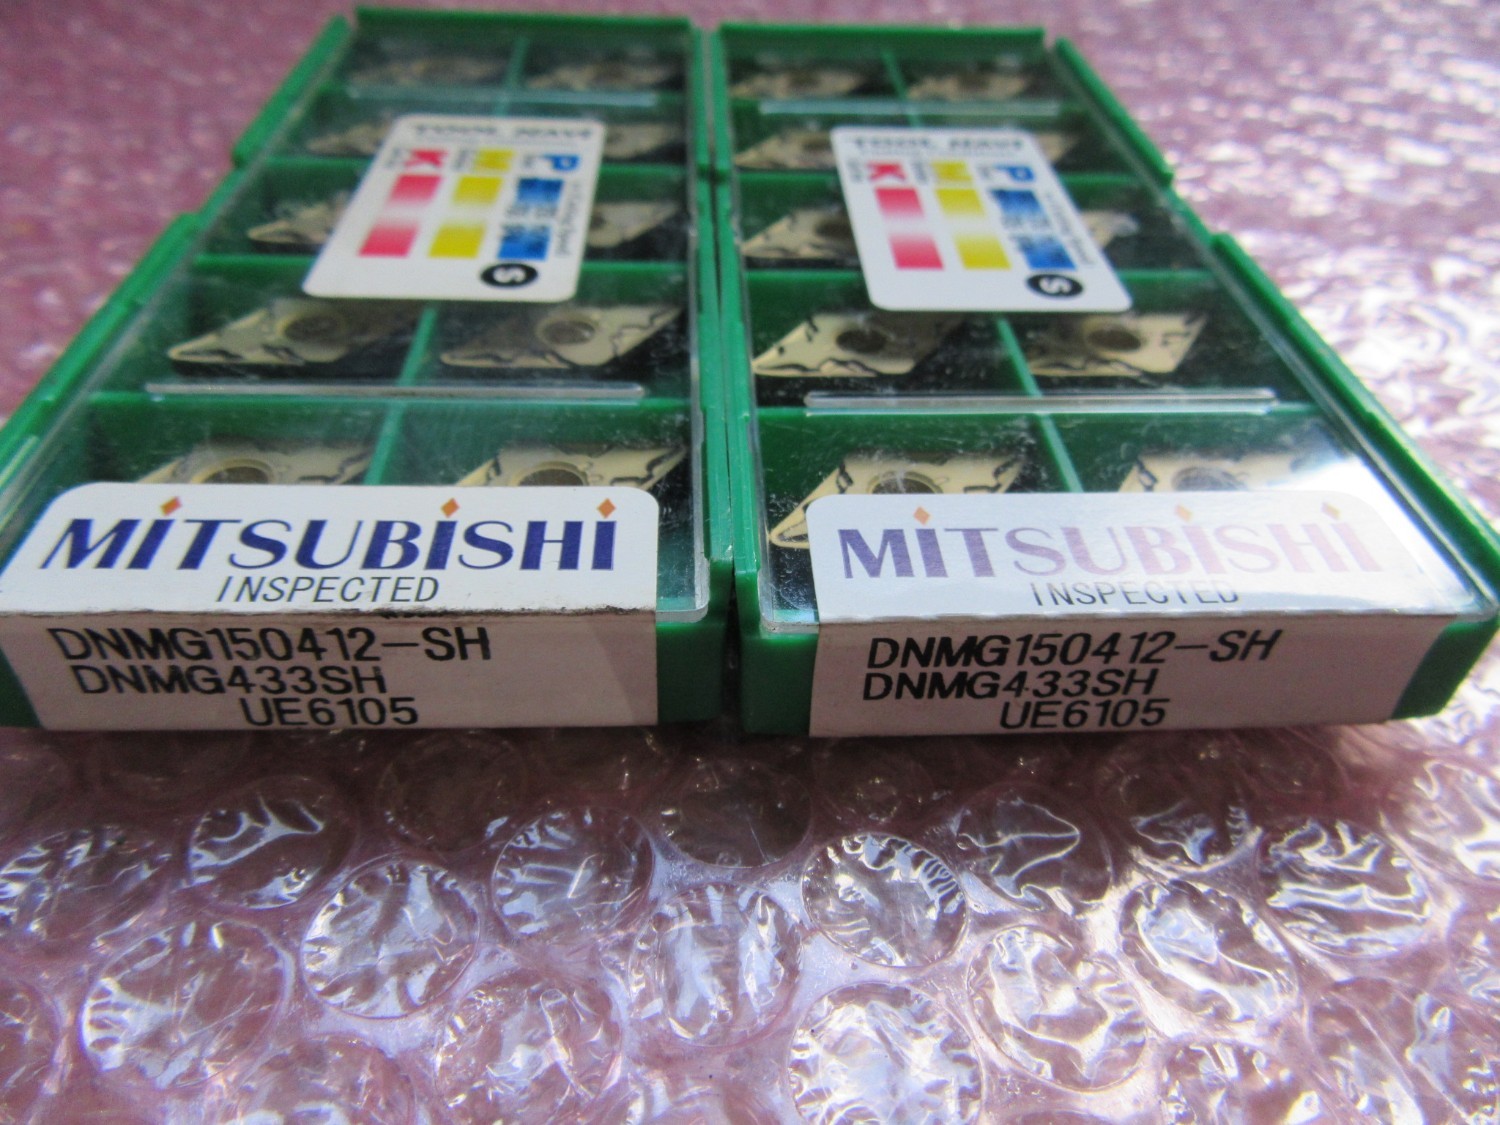 中古Cutting Exchange Chip 【チップ2個】DNMG150412E6105 MITSUBISHI 